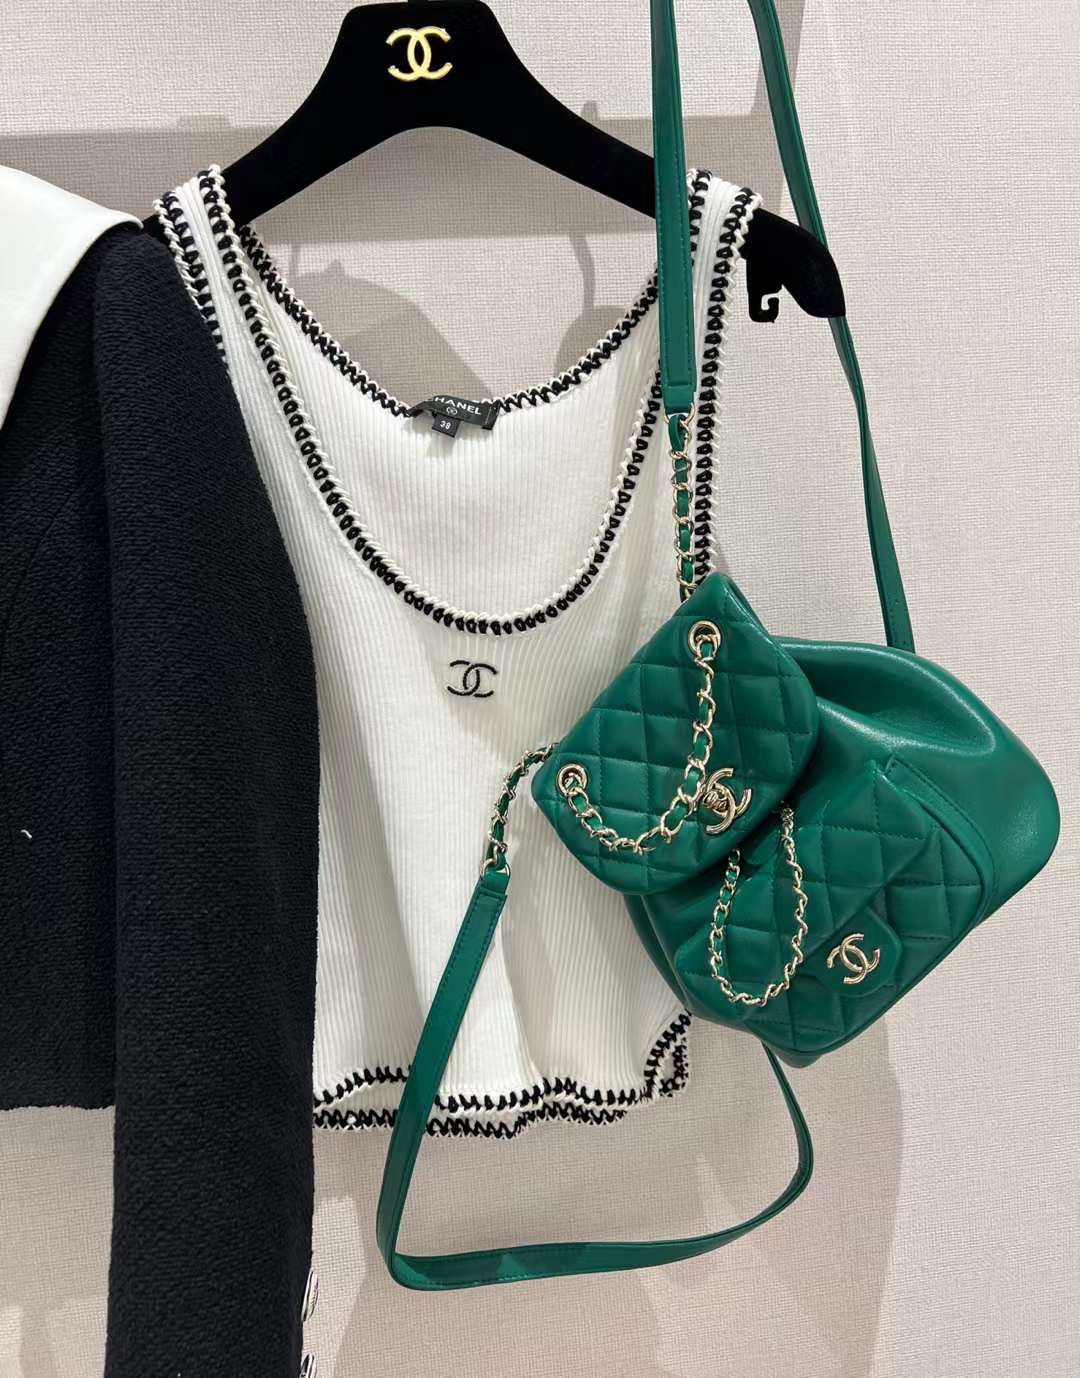 【P1880】Chanel包包官网 香奈儿菱格纹羊皮链条双肩包Duma背包 绿色